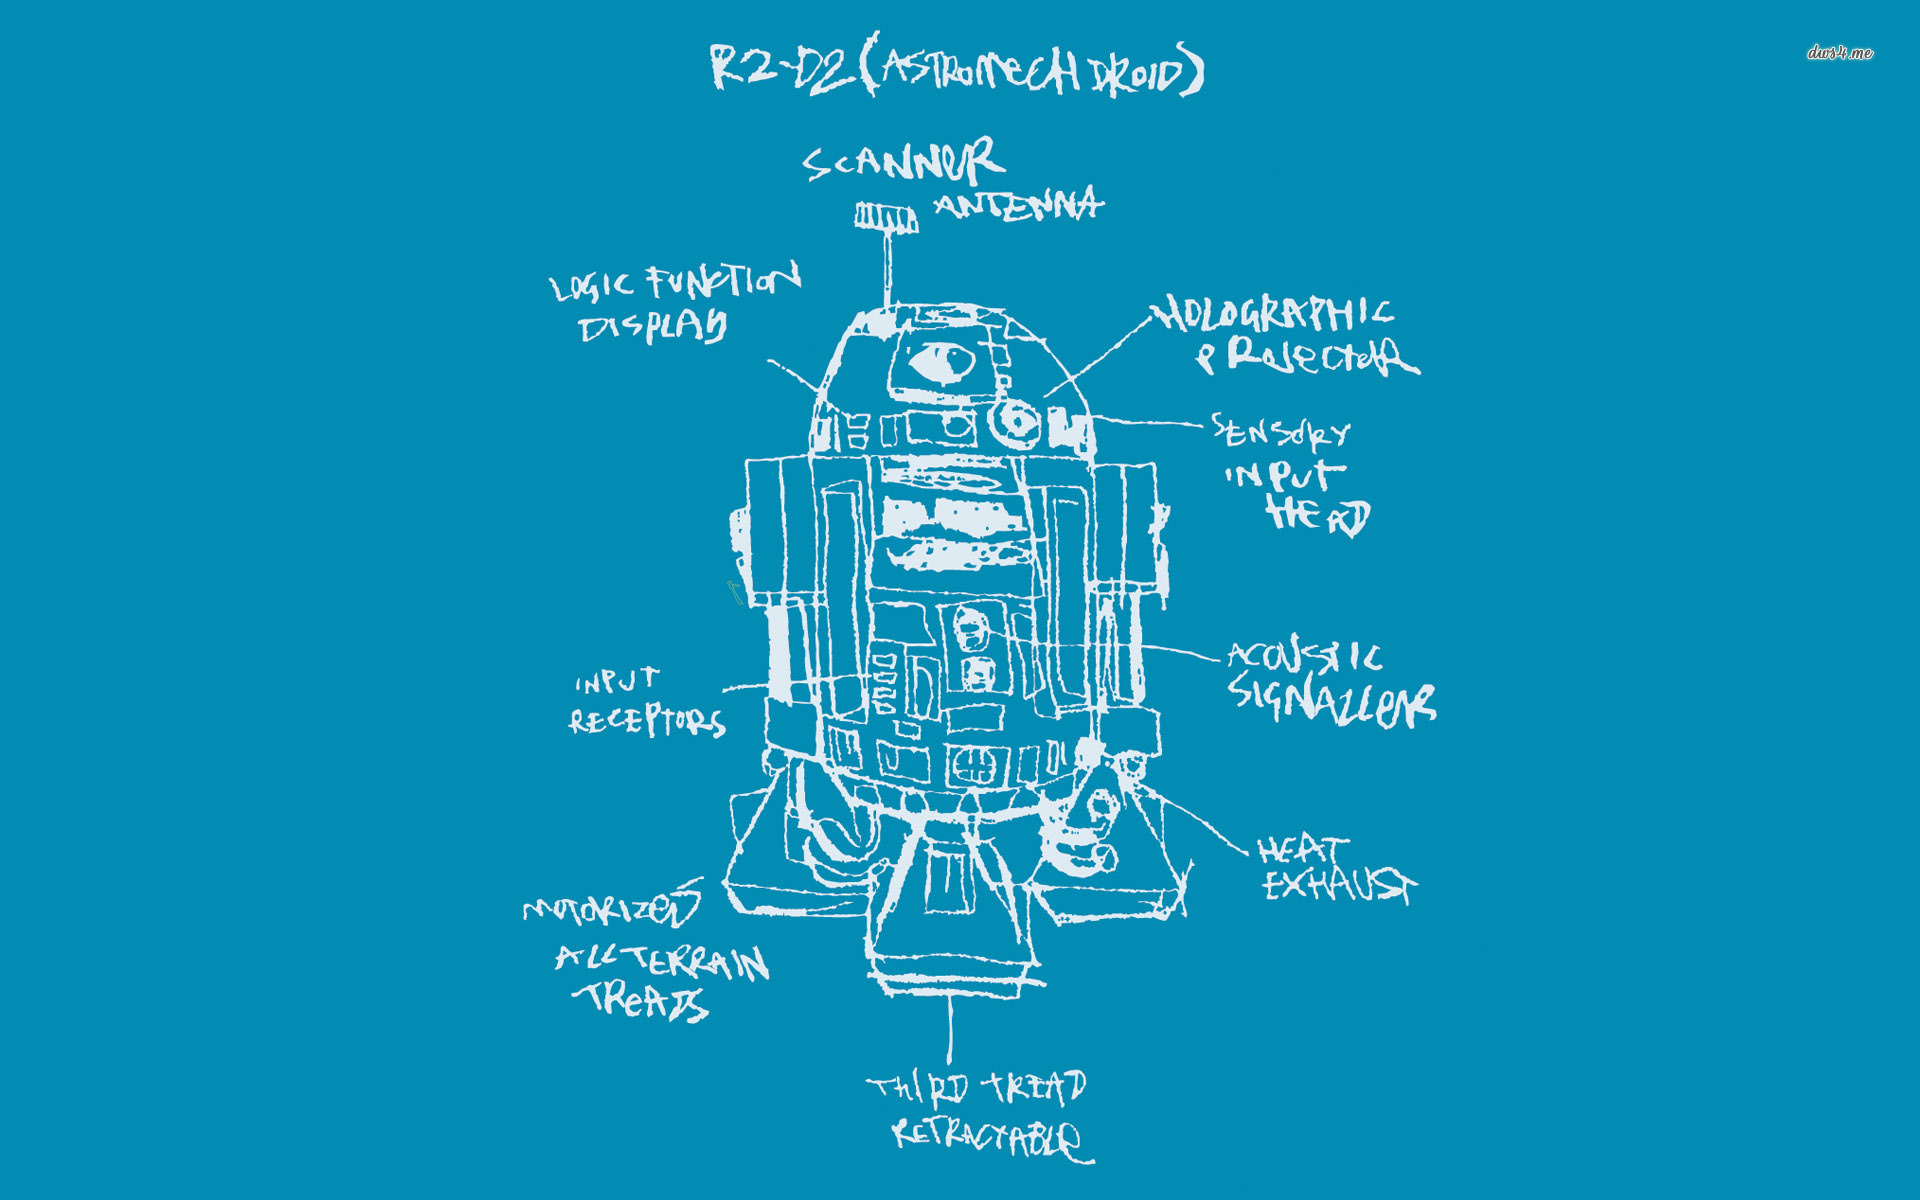 R2 D2 Star Wars Wallpaper Resolution 19x10 Id 7794 Wallha Com